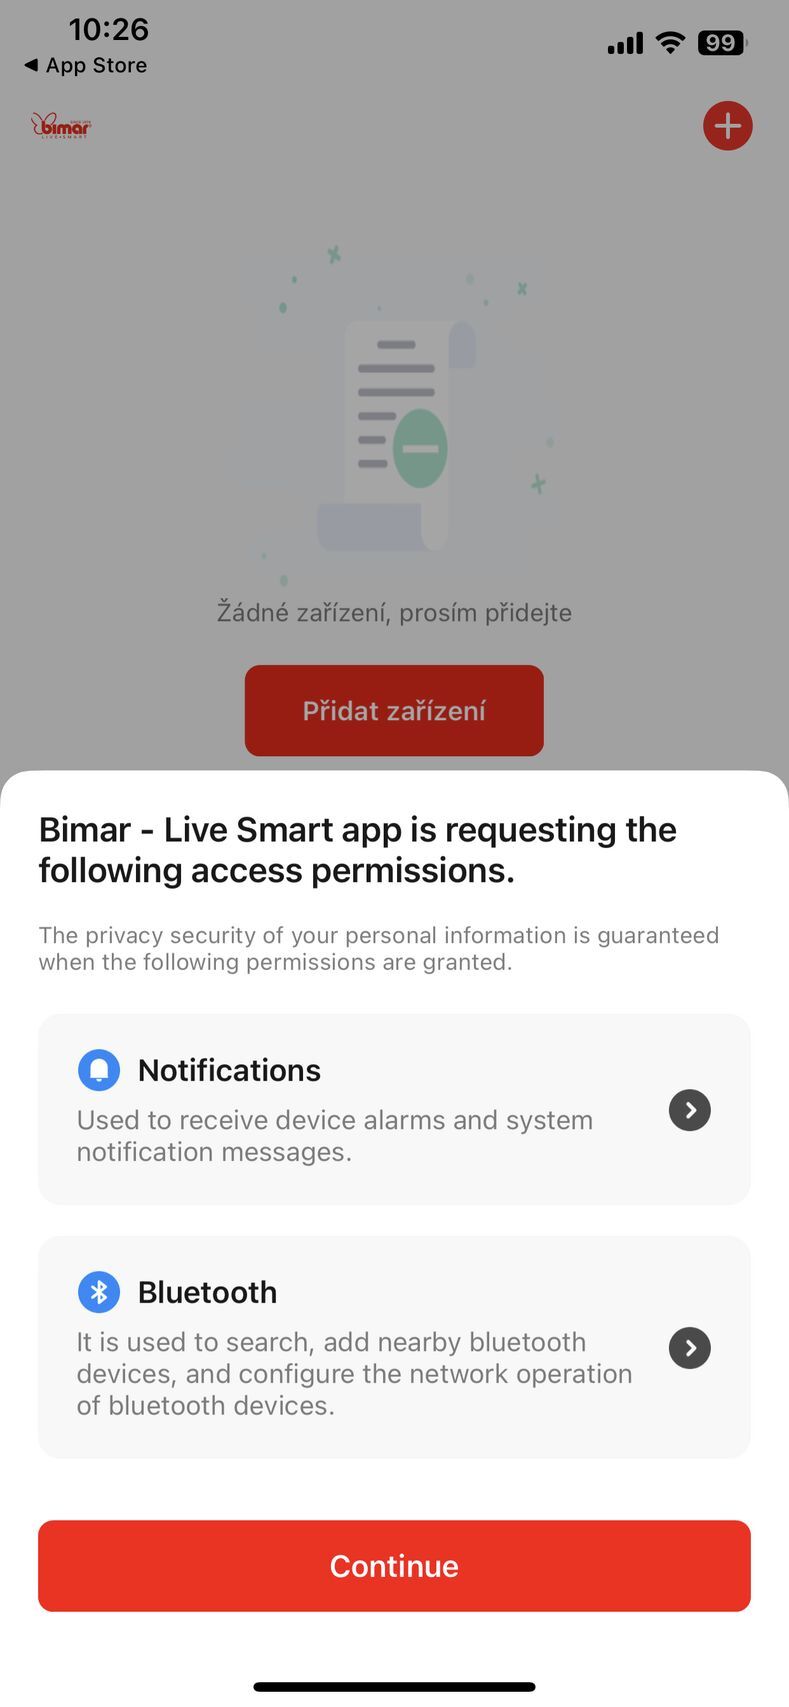 Bimar-Live Smart